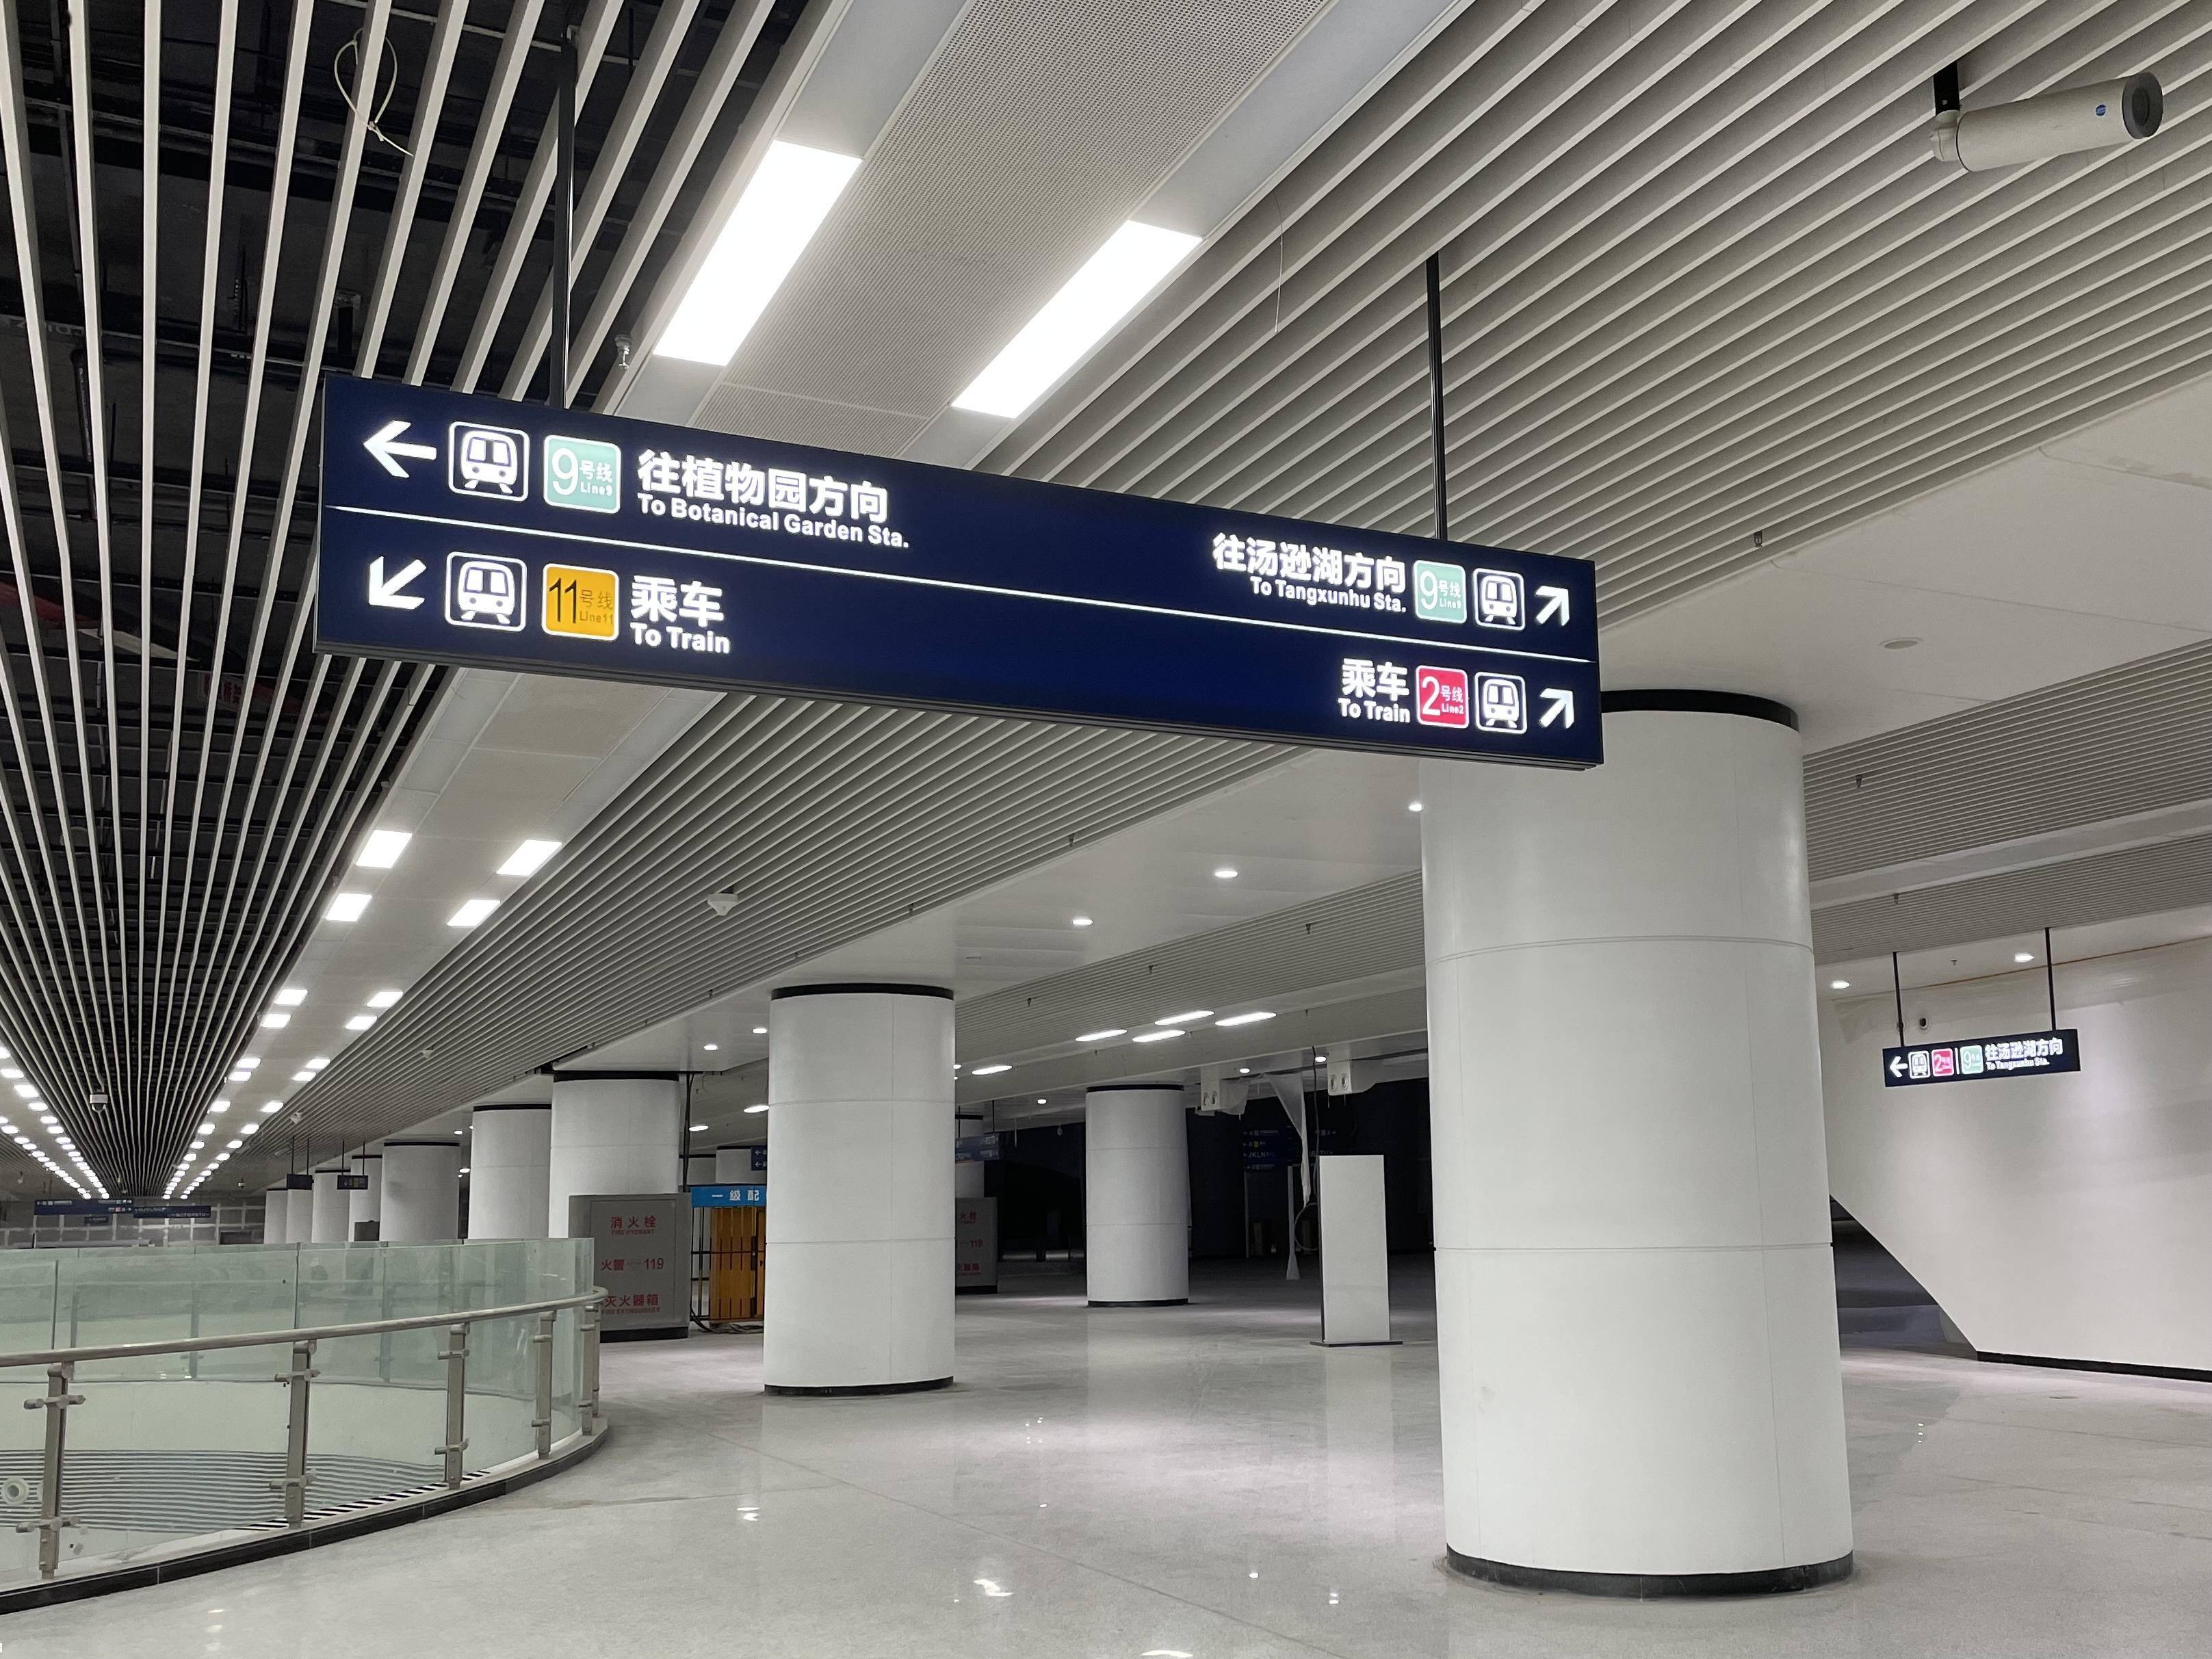 带你走进武汉光谷广场地下城,探寻9号线的站台和标识牌